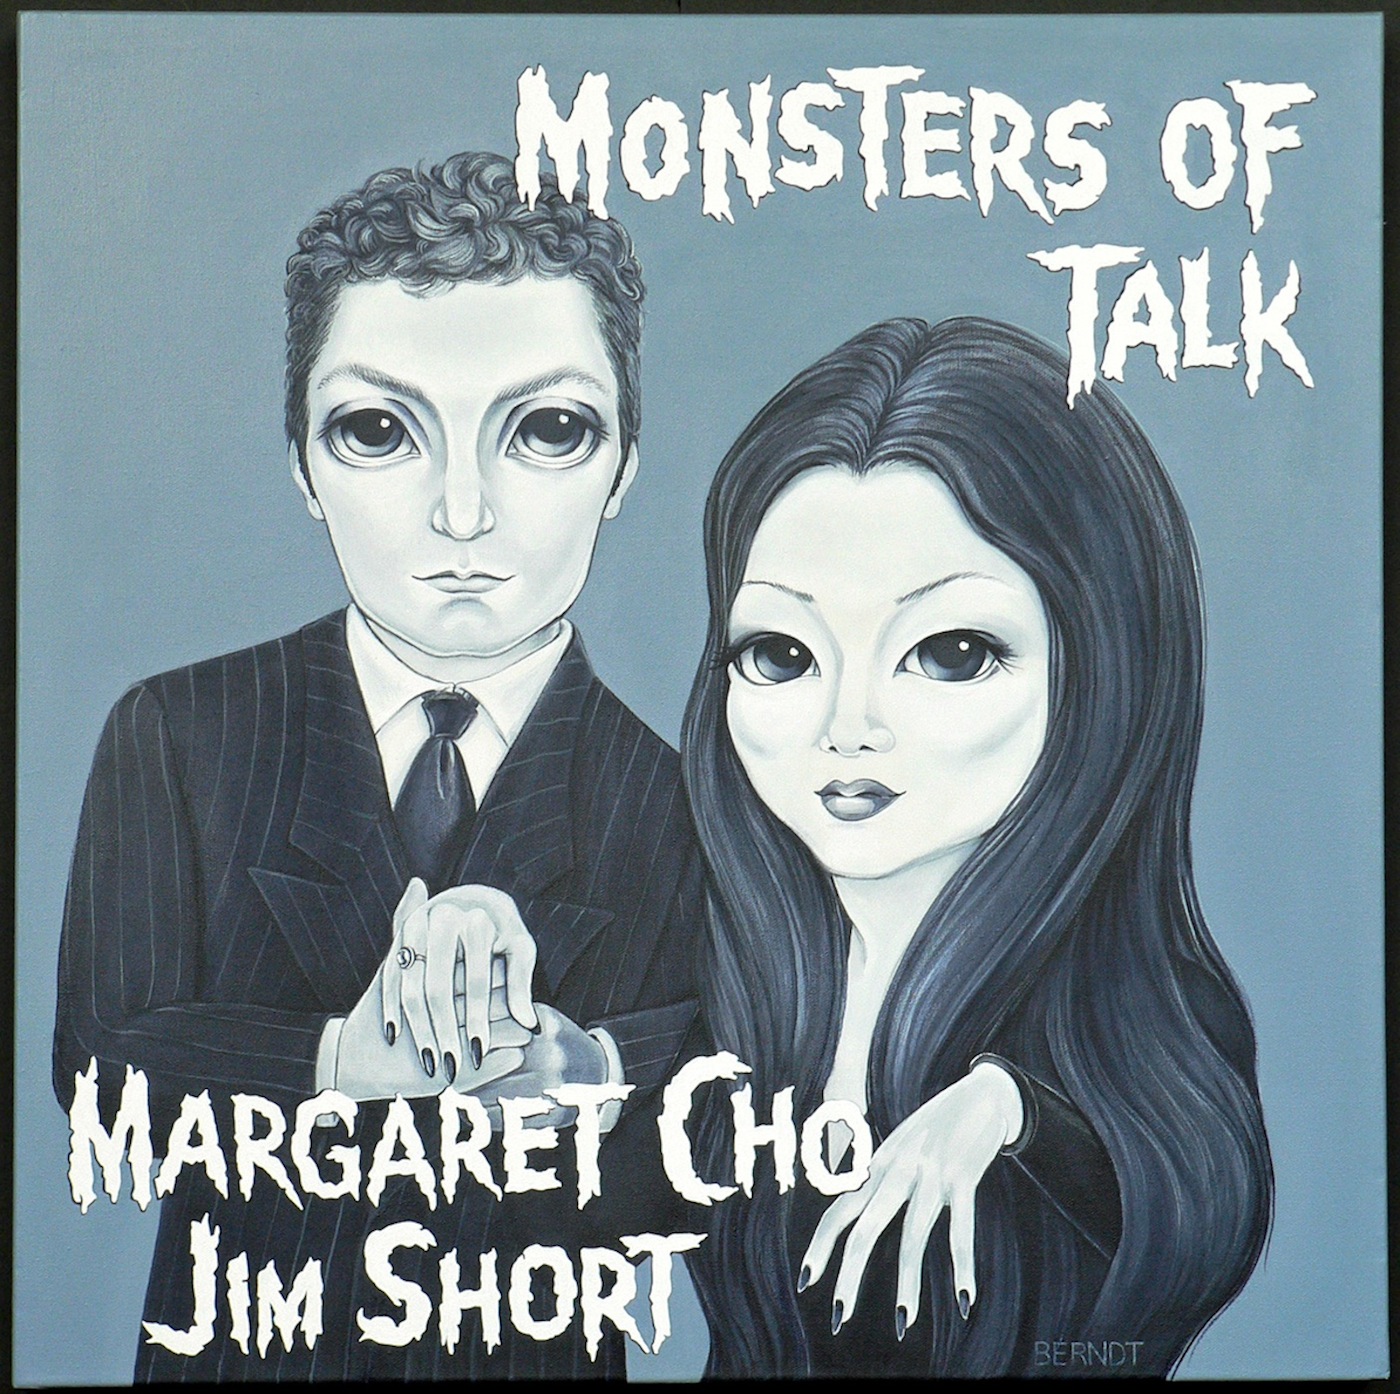 Margaret Cho Podcast artwork